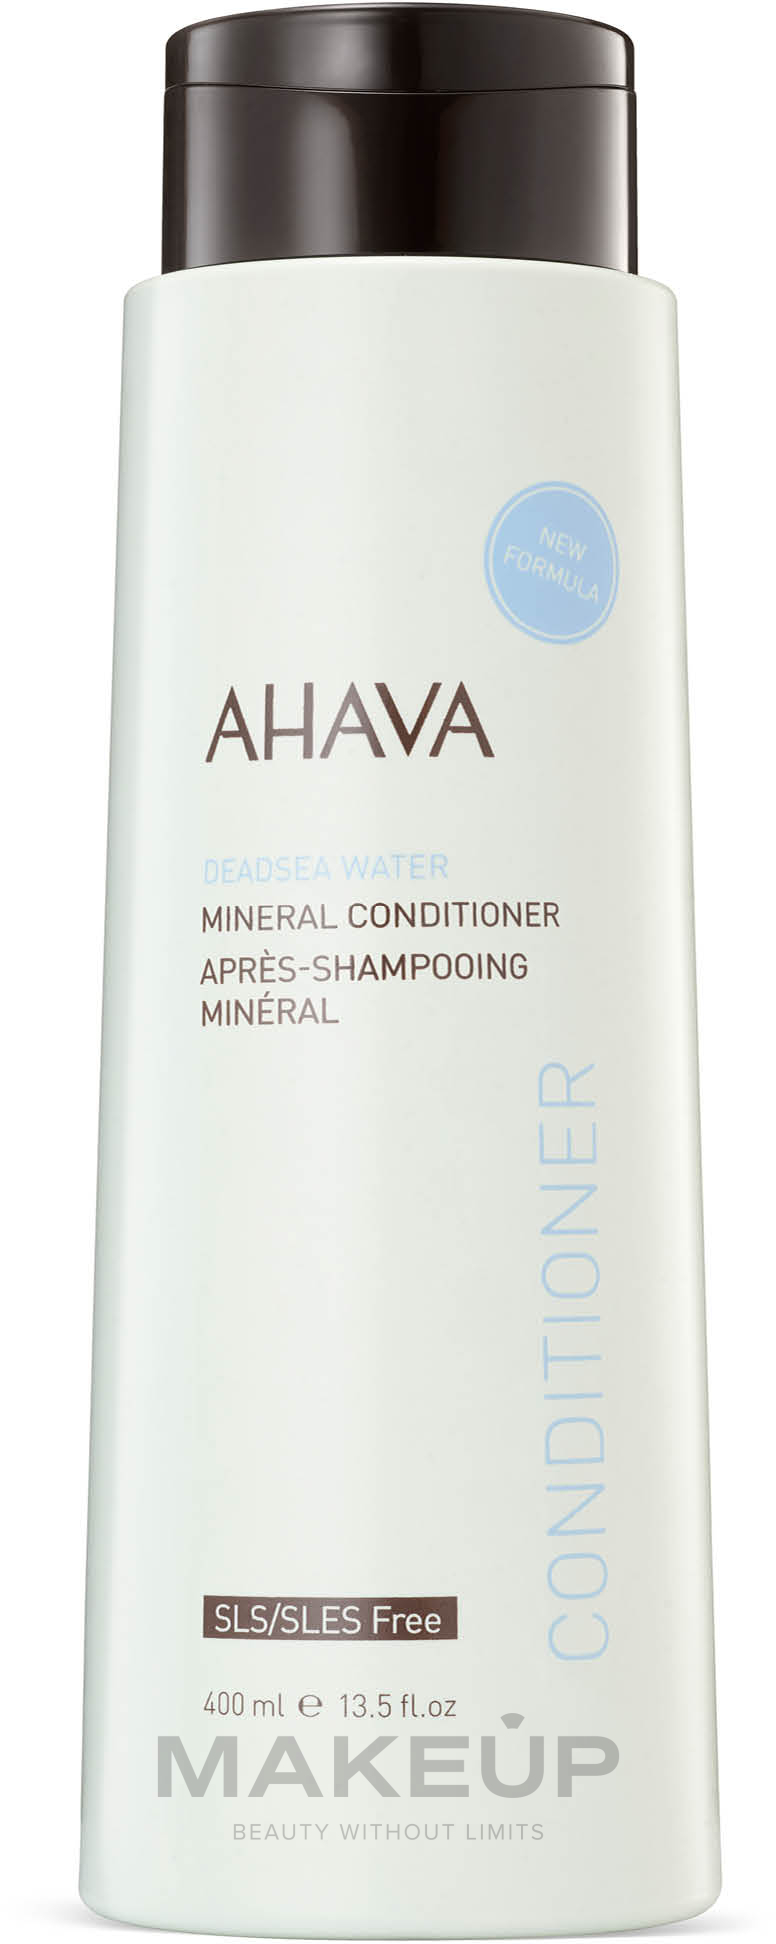 Mineralbalsam für weiches und elastisches Haar - Ahava Deadsea Water Mineral Conditioner — Bild 400 ml